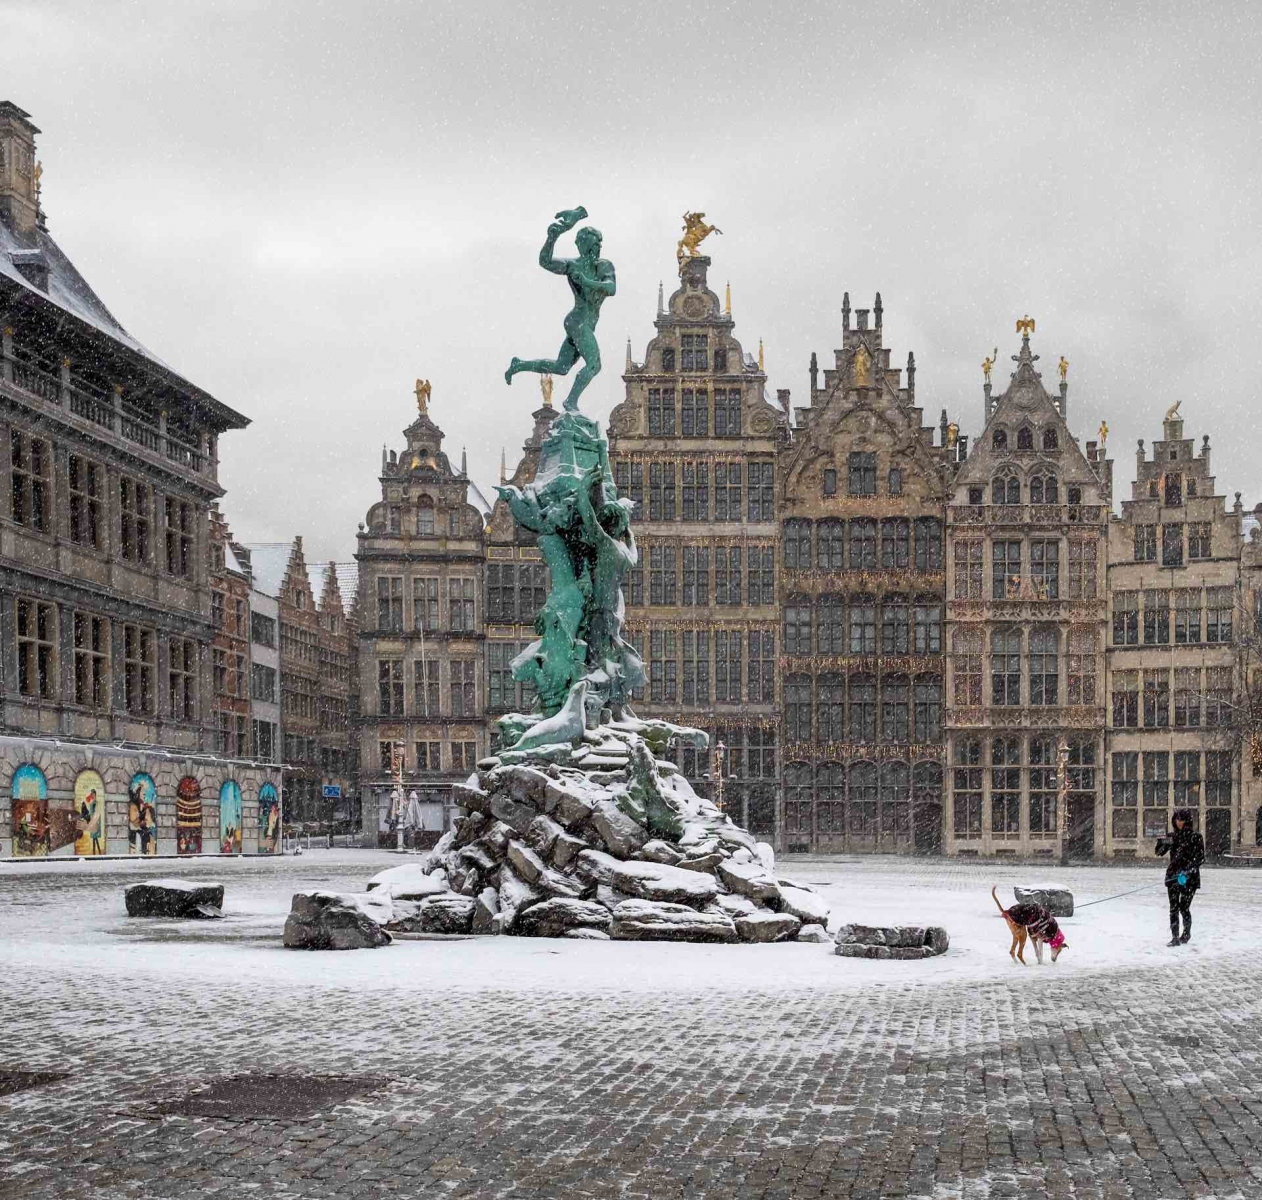 Площадь "Гроте Маркт" в городе Антверпен, покрытая снегом